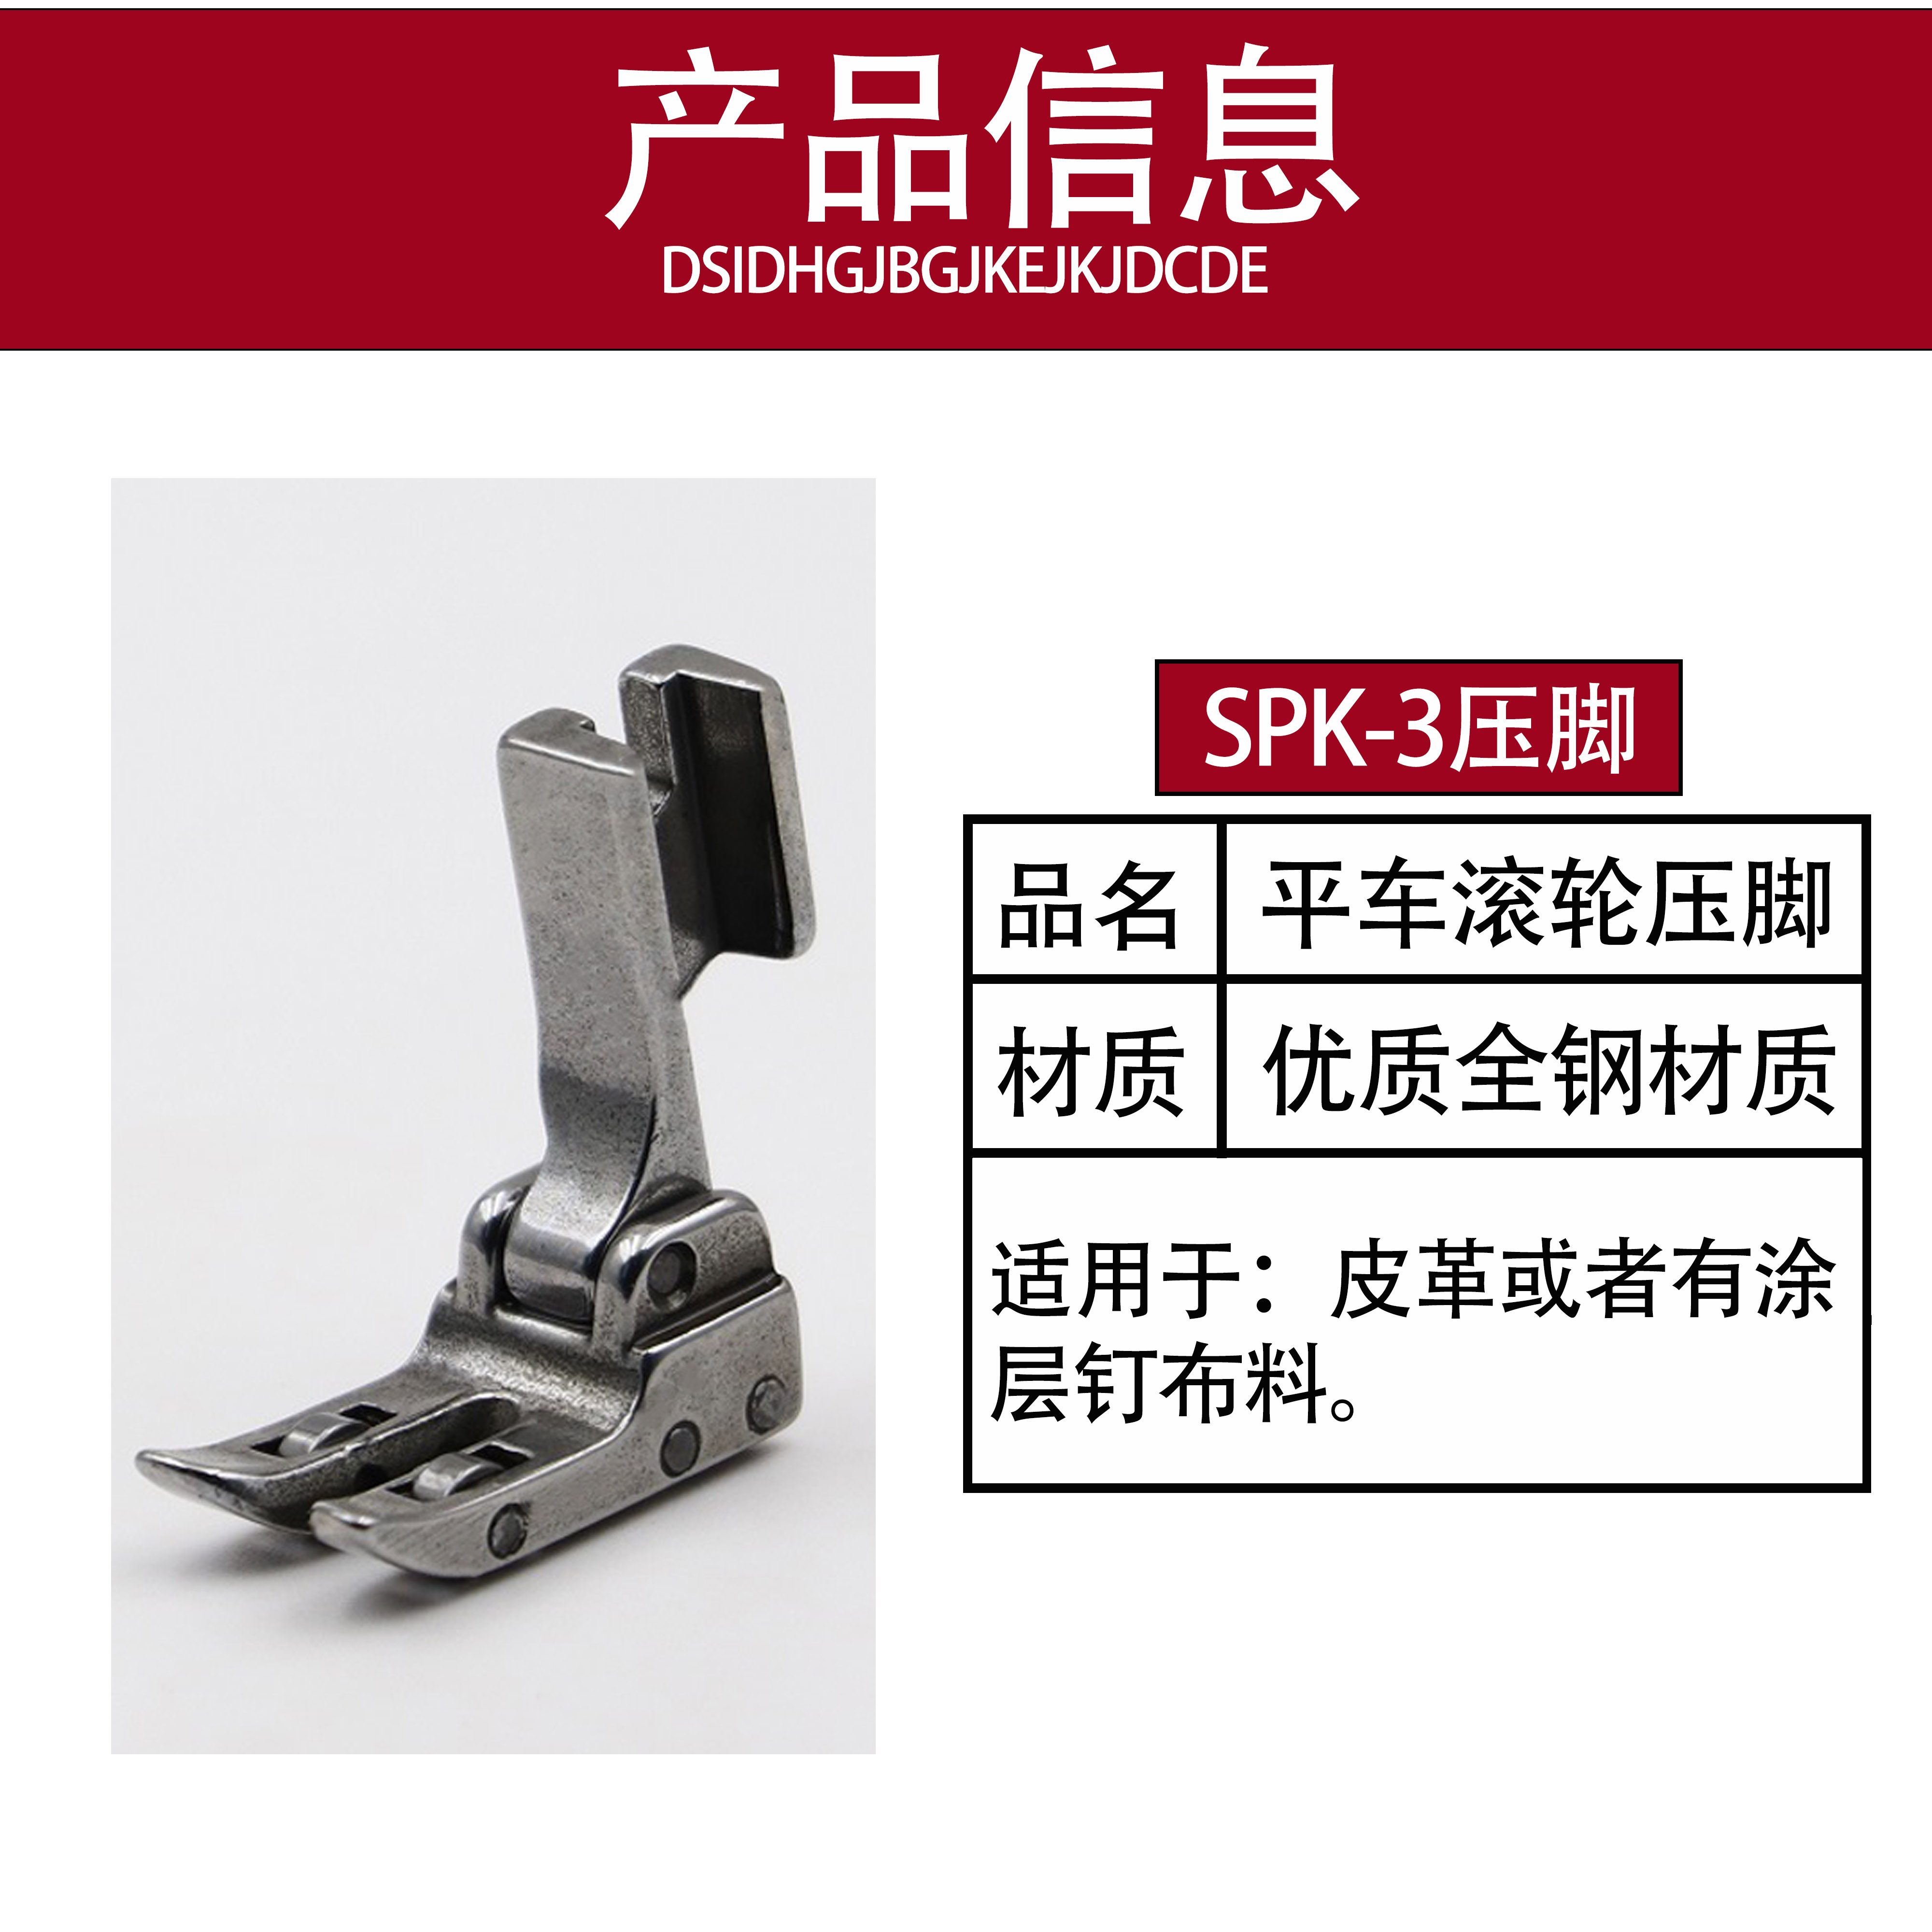 spk-3压脚平车滚轮压脚缝纫机带轮子压脚工业缝纫机皮革专用压脚